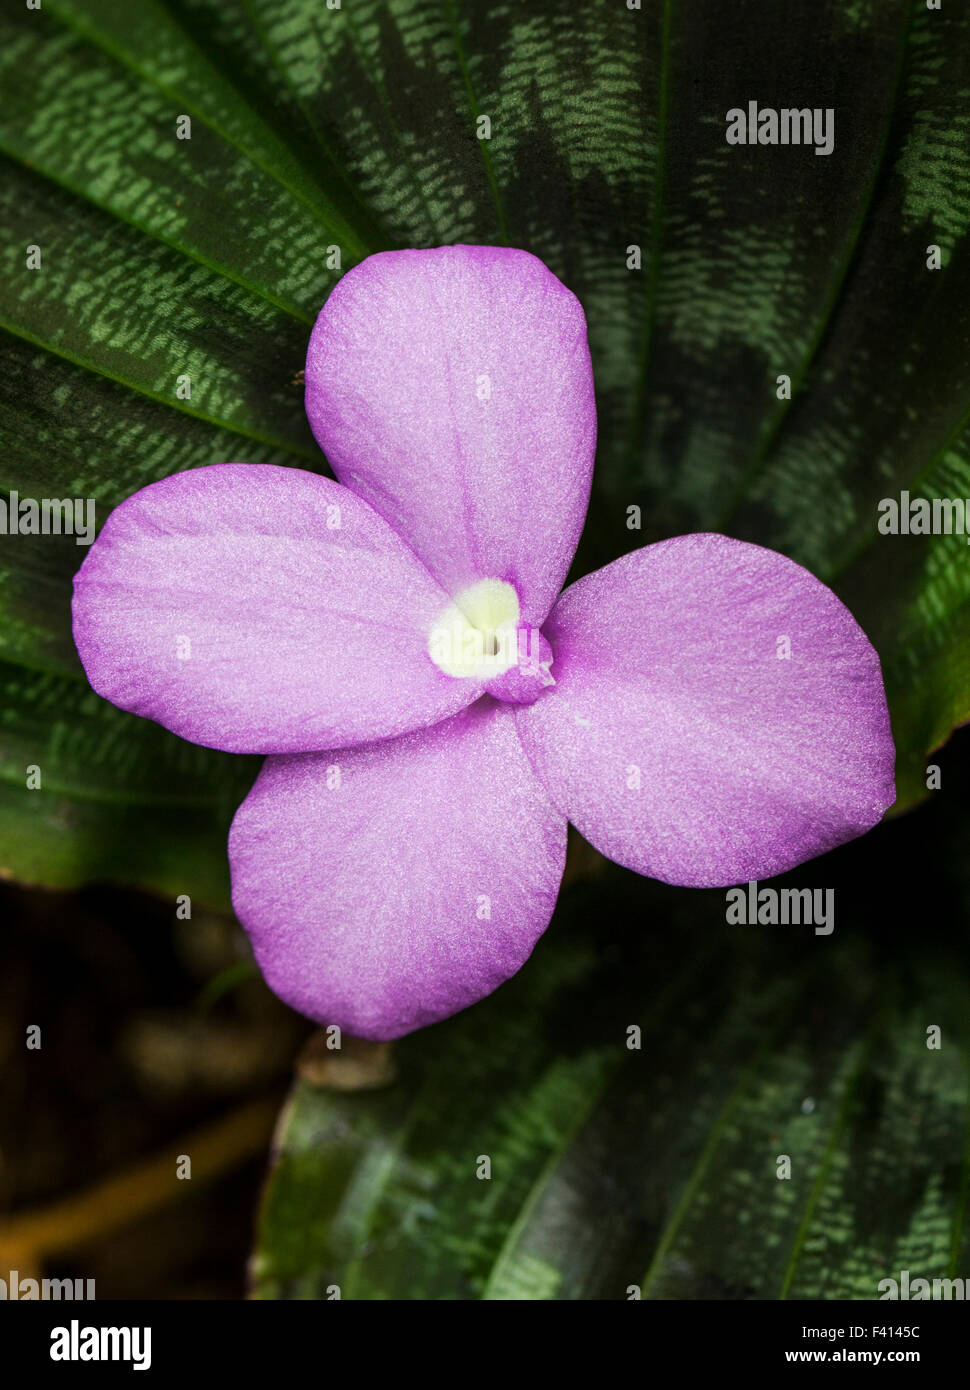 Rubis birman ; Zingiber sp. ; Zingiberaceae ; Hawaii Tropical Botanical Garden Nature Preserve ; Big Island, Hawaii, USA Banque D'Images